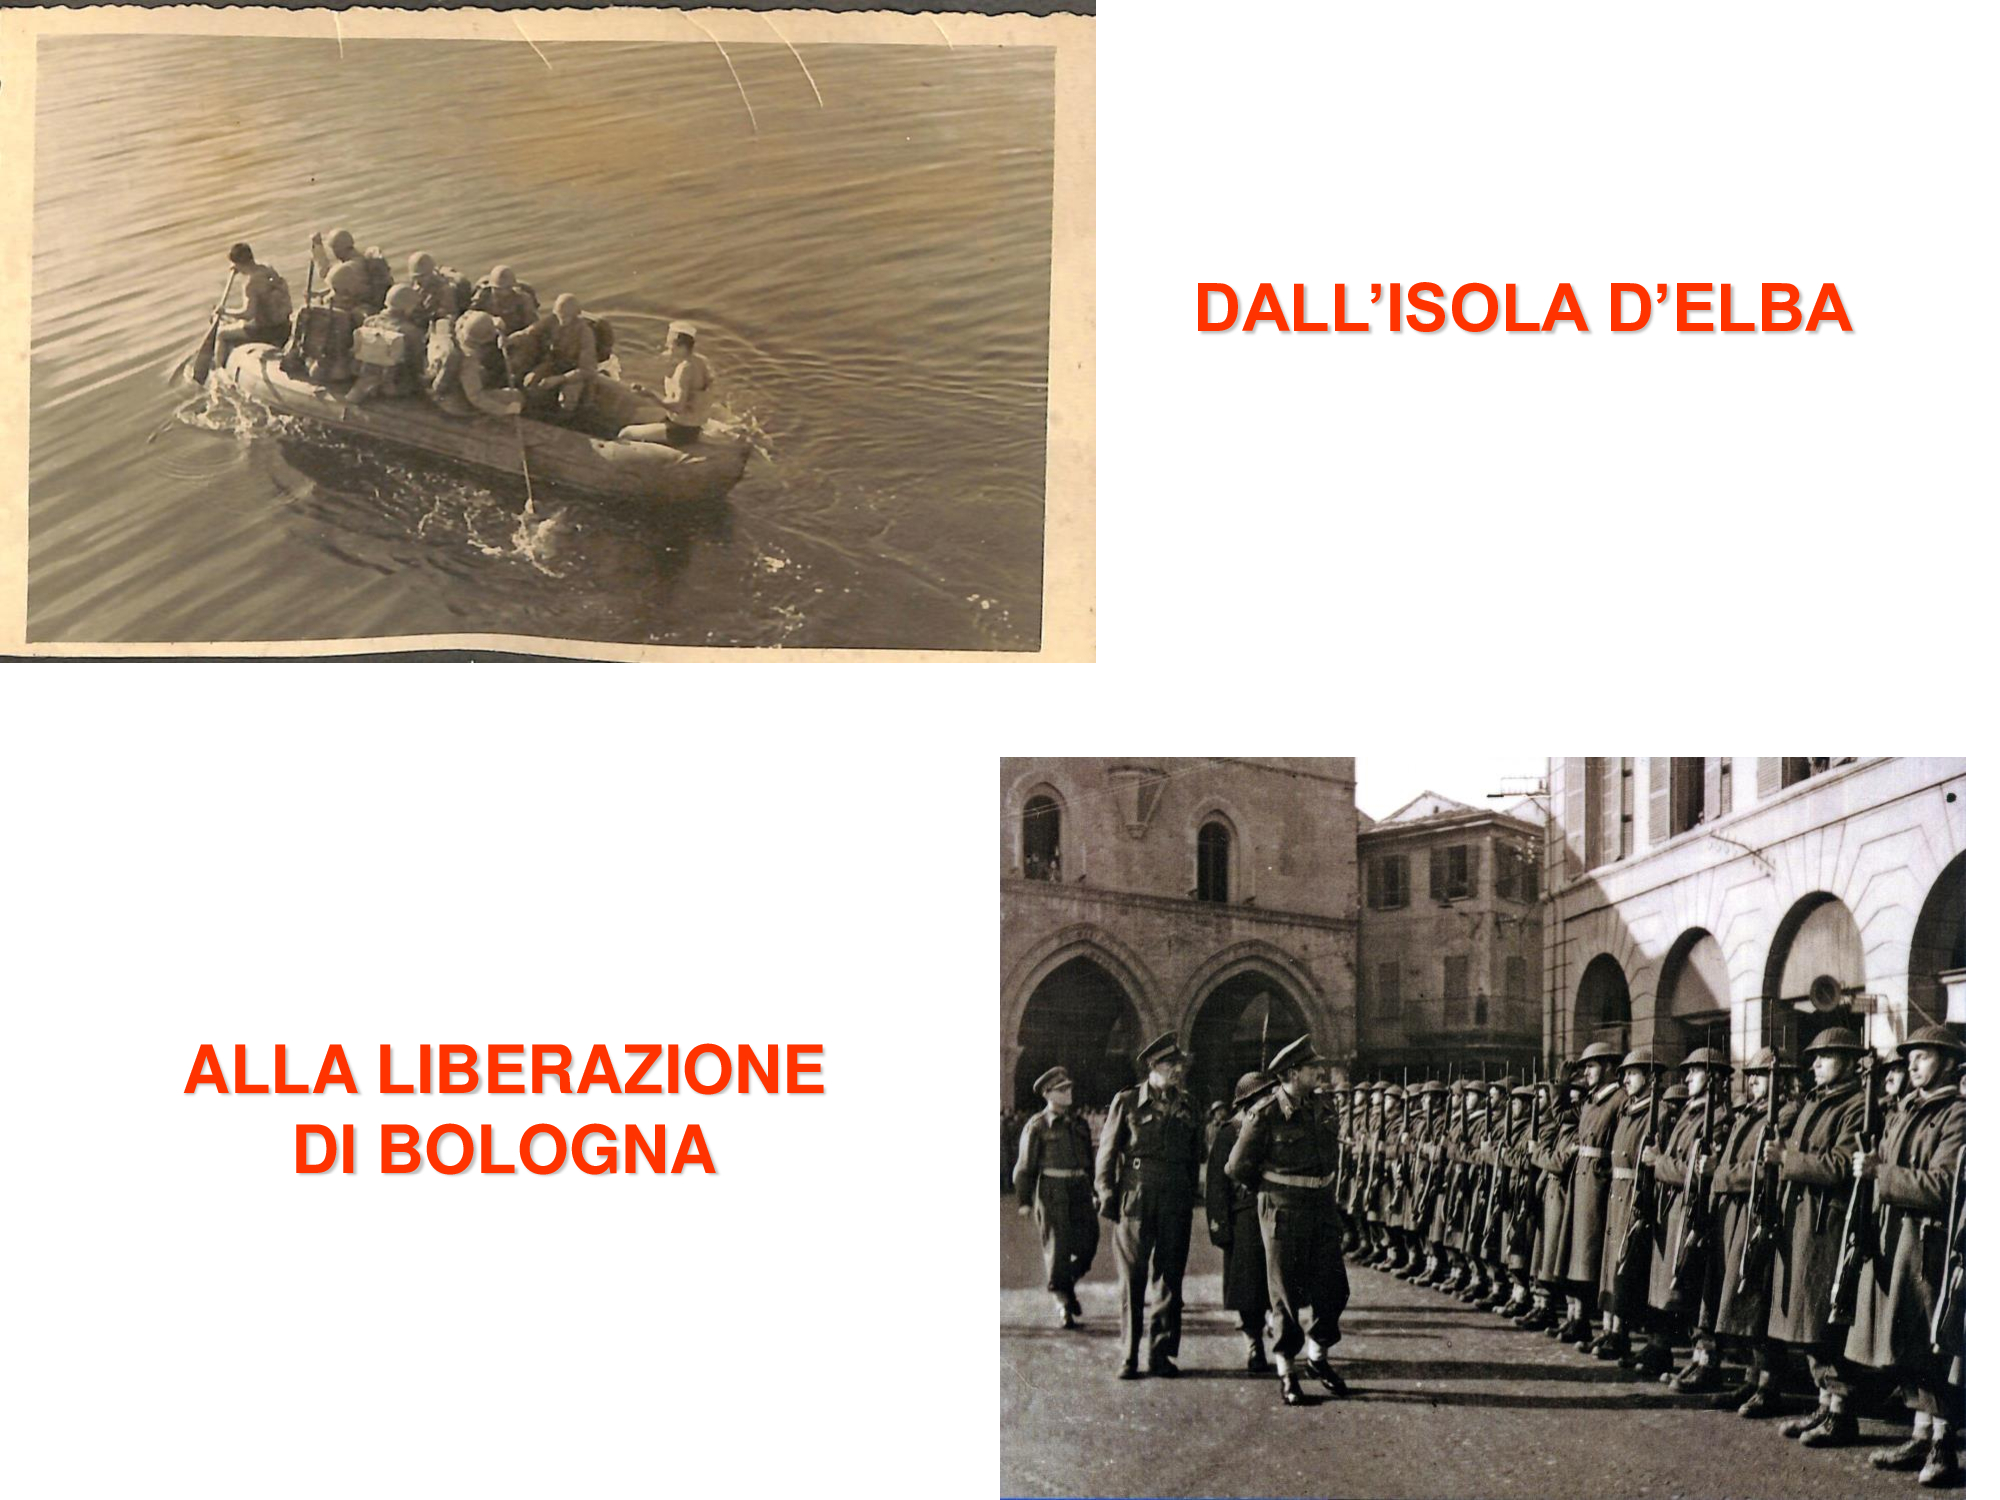  Dall'Isola d'Elba alla Liberazione di Bologna